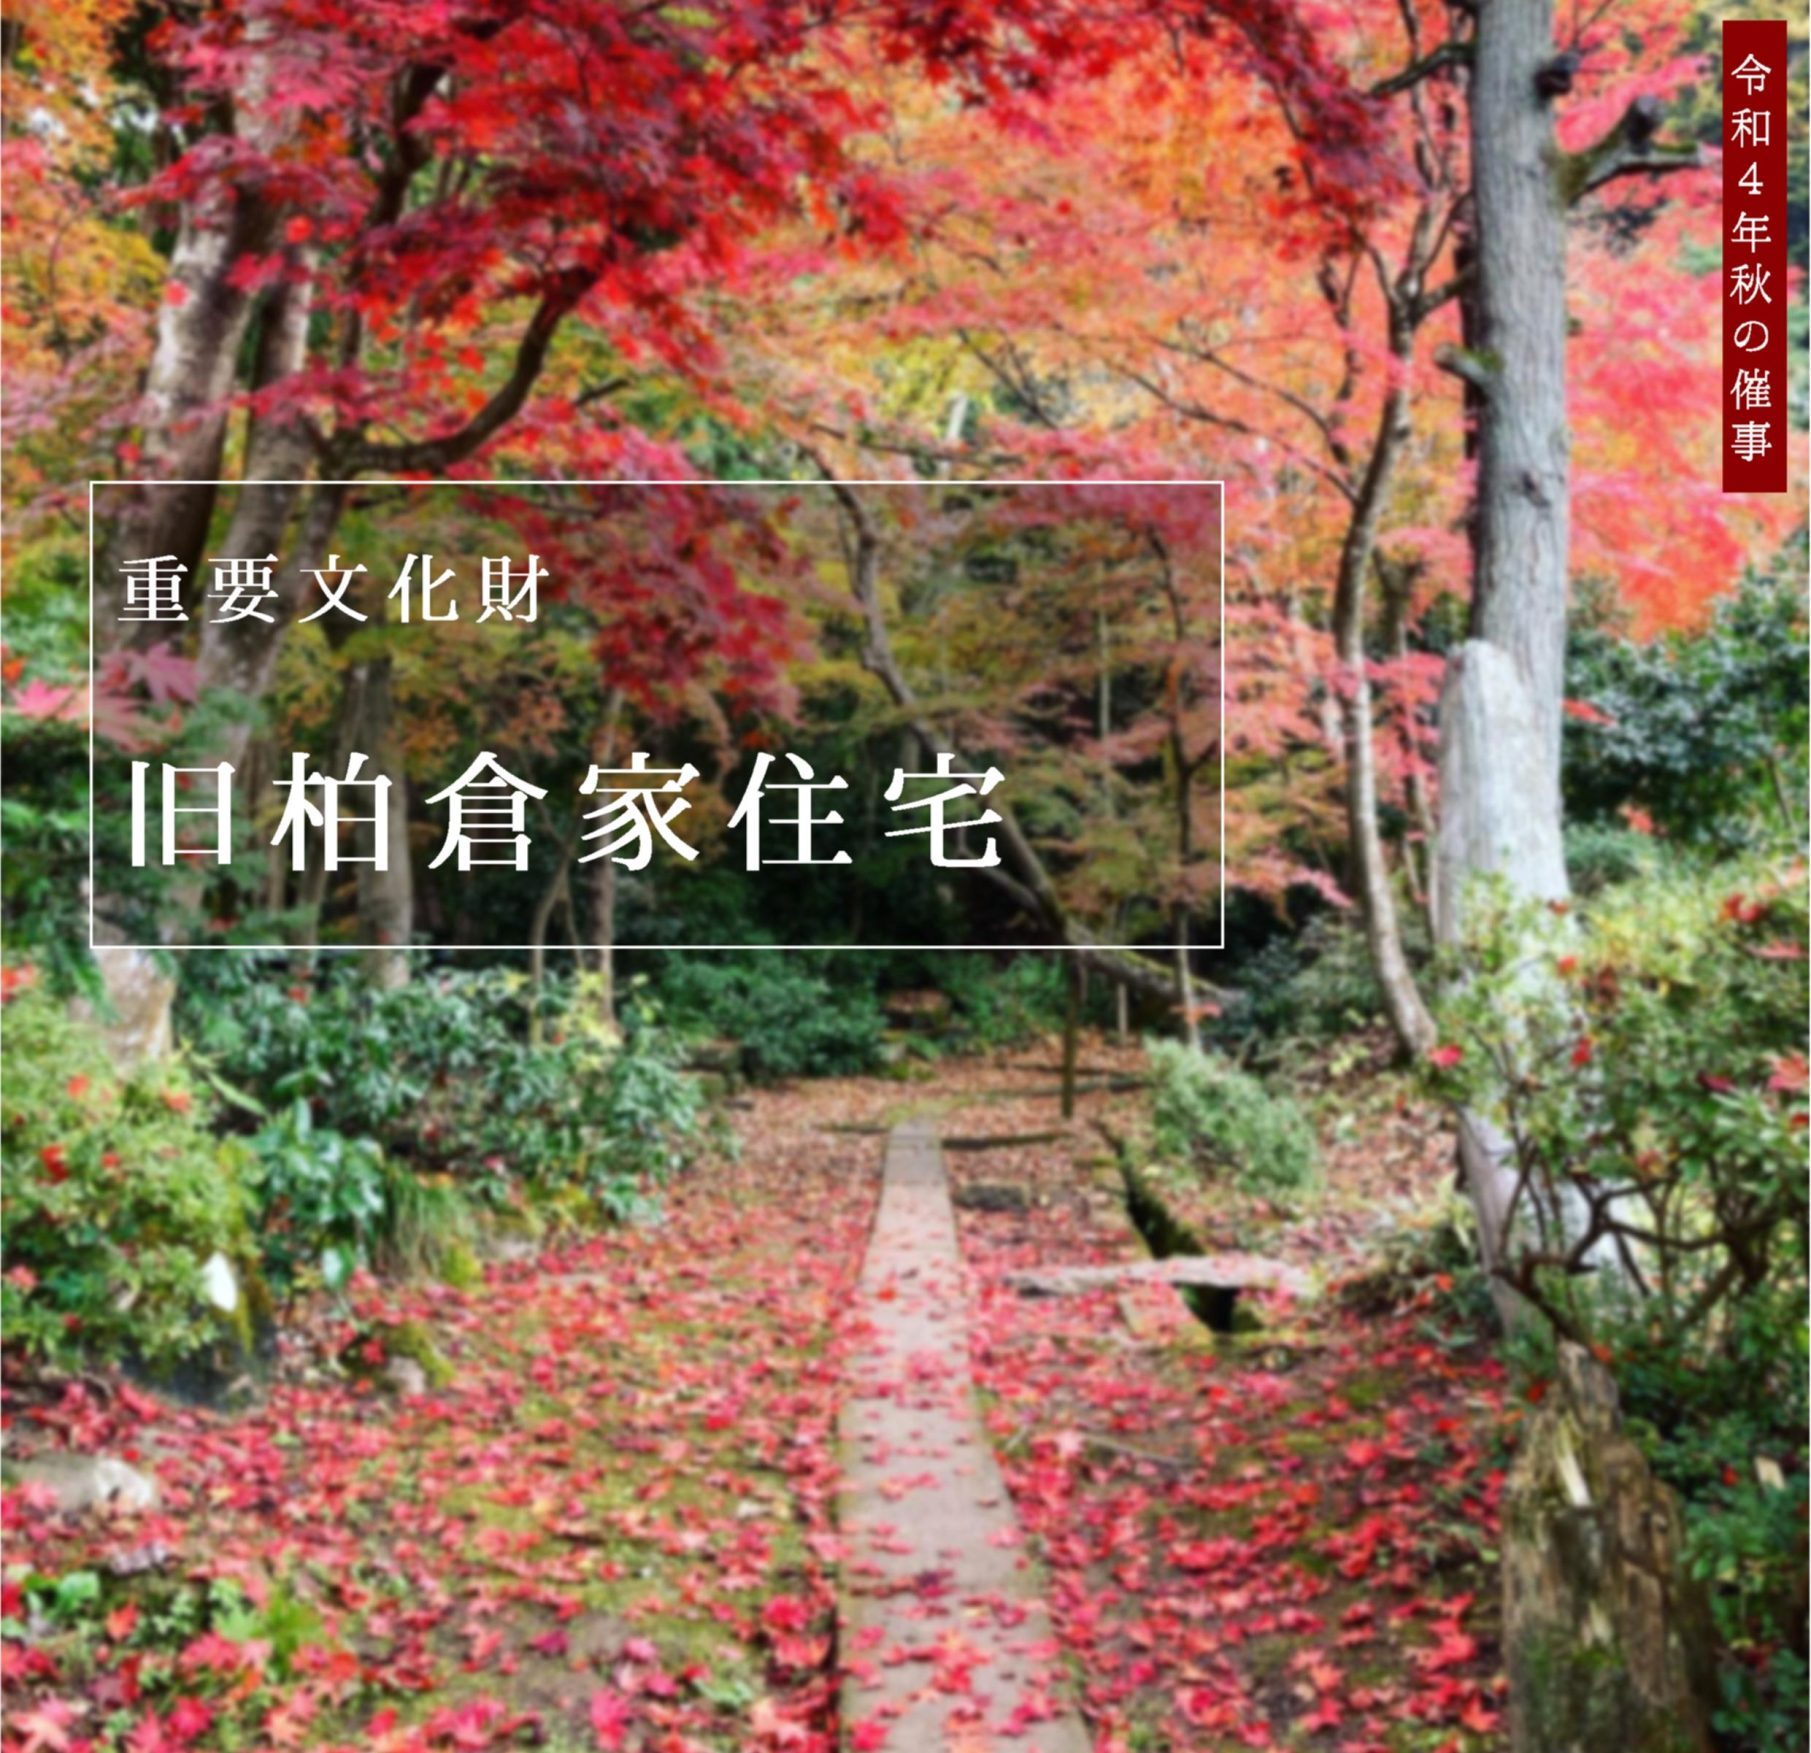 紅葉の秋 -催事情報-